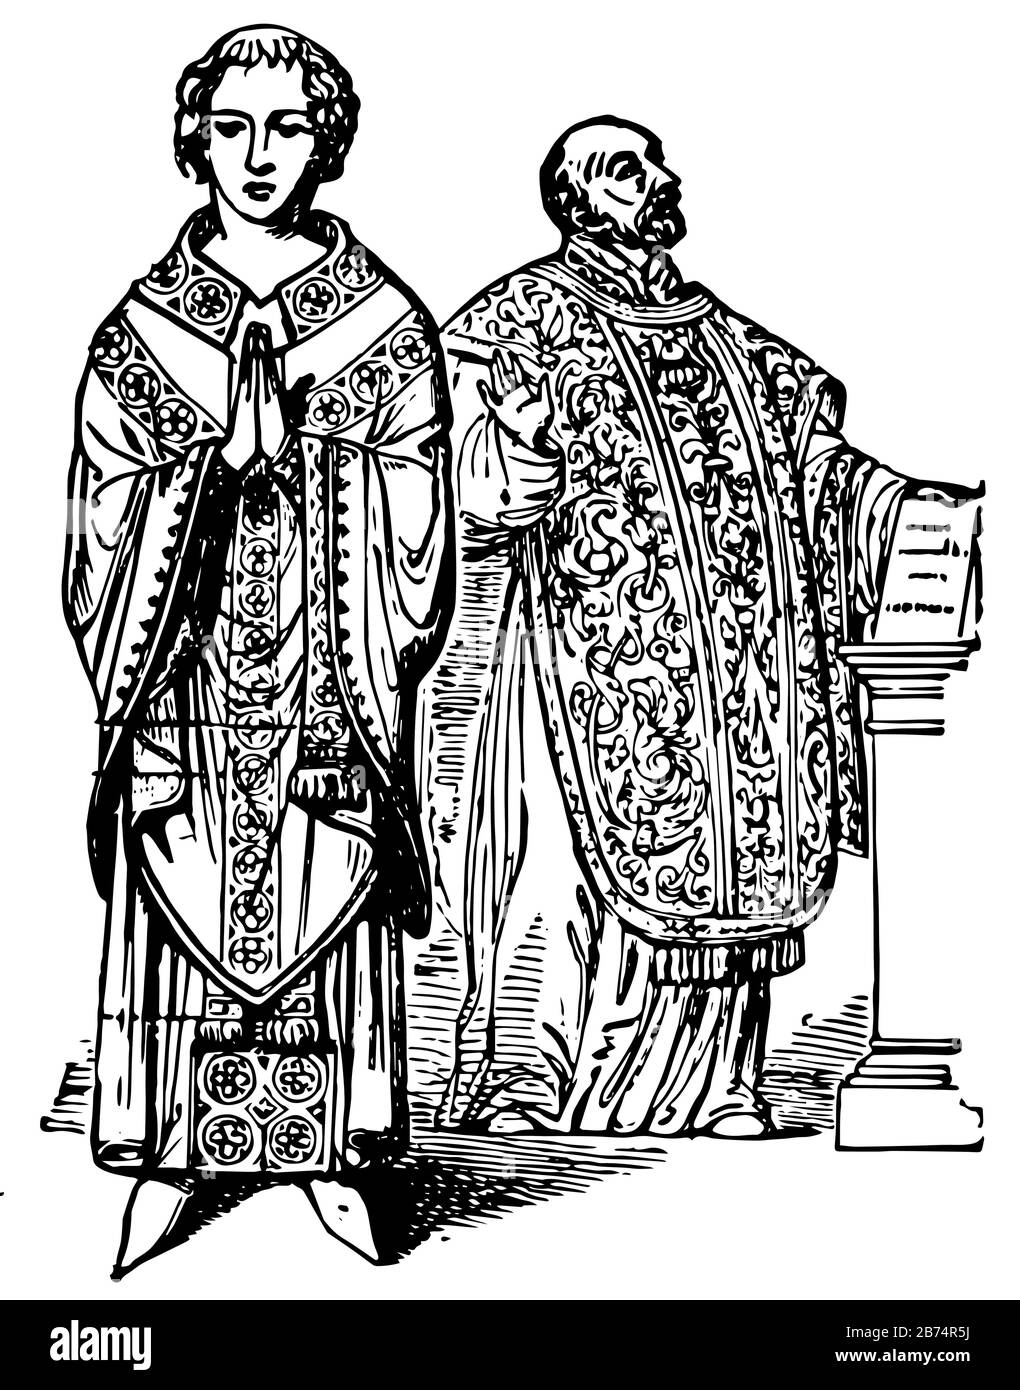 Les chasuble ont Deux prêtres portant le vêtement, le dessin de ligne vintage ou l'illustration de gravure. Illustration de Vecteur